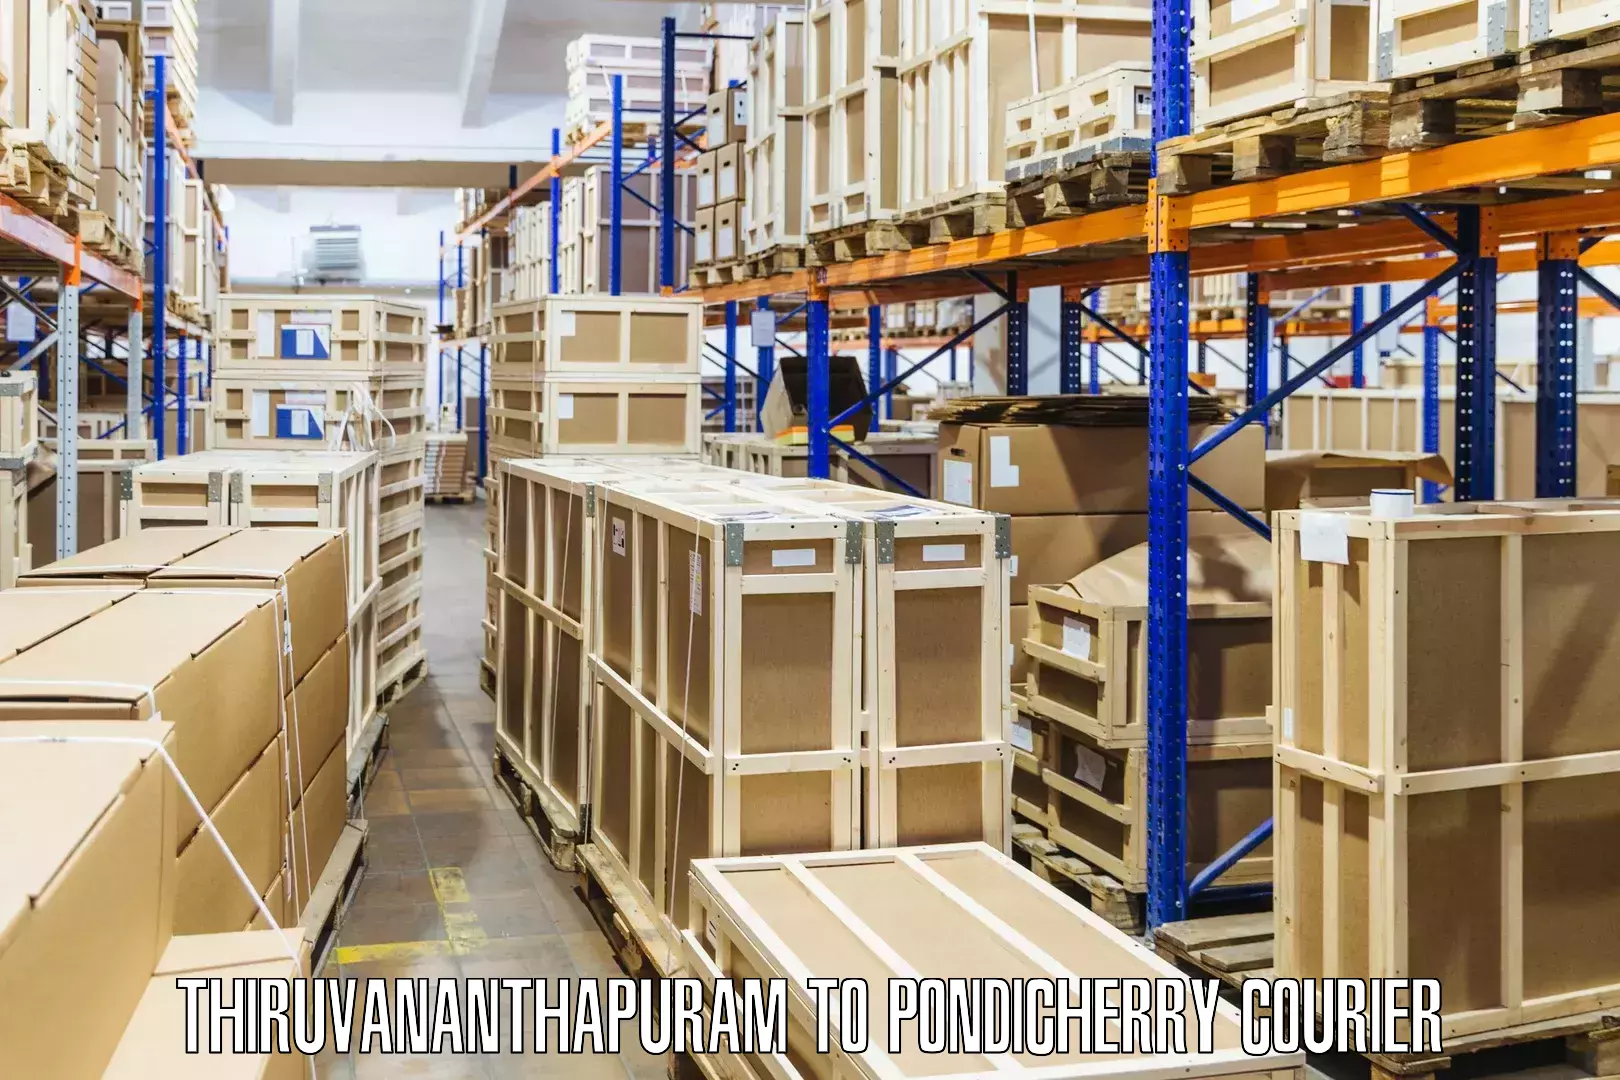 Expedited shipping solutions Thiruvananthapuram to Metttupalayam